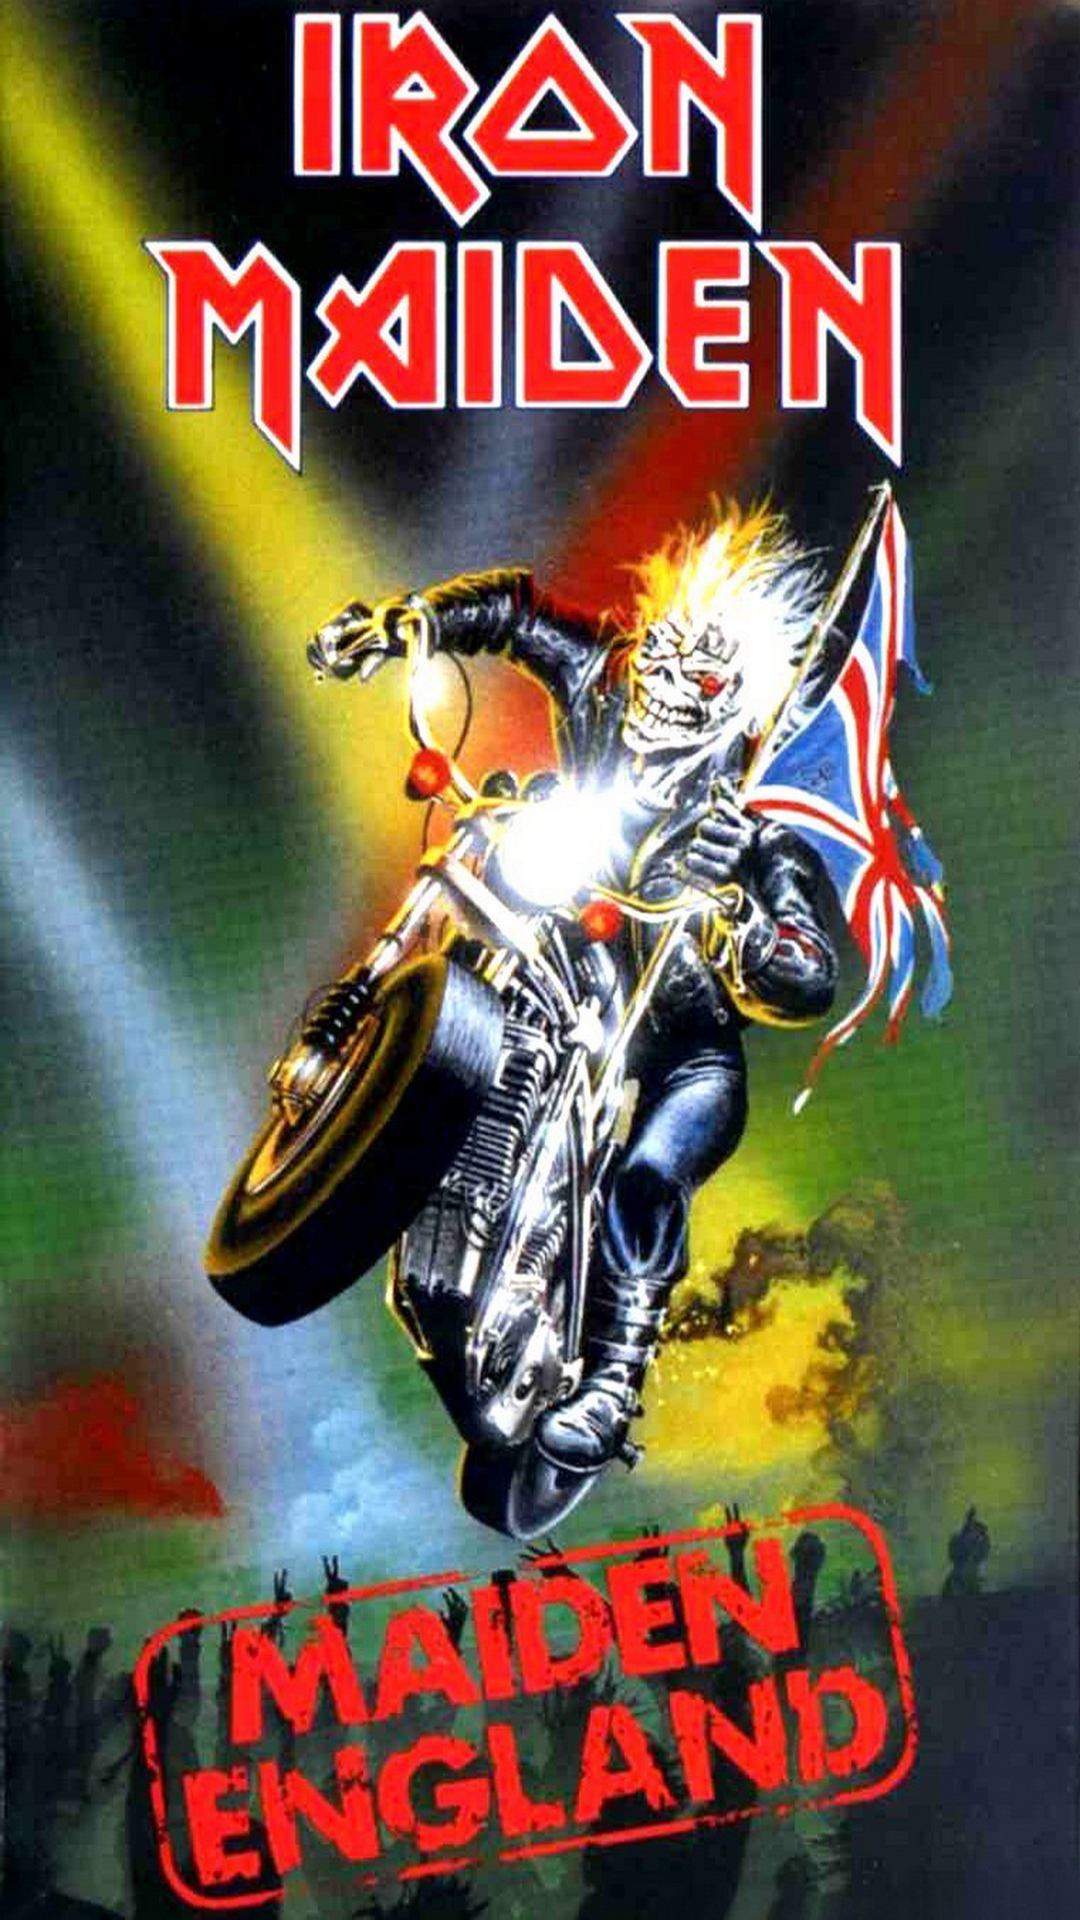 Eddie Iron Maiden wallpaper by CuloBone  Download on ZEDGE  b29d